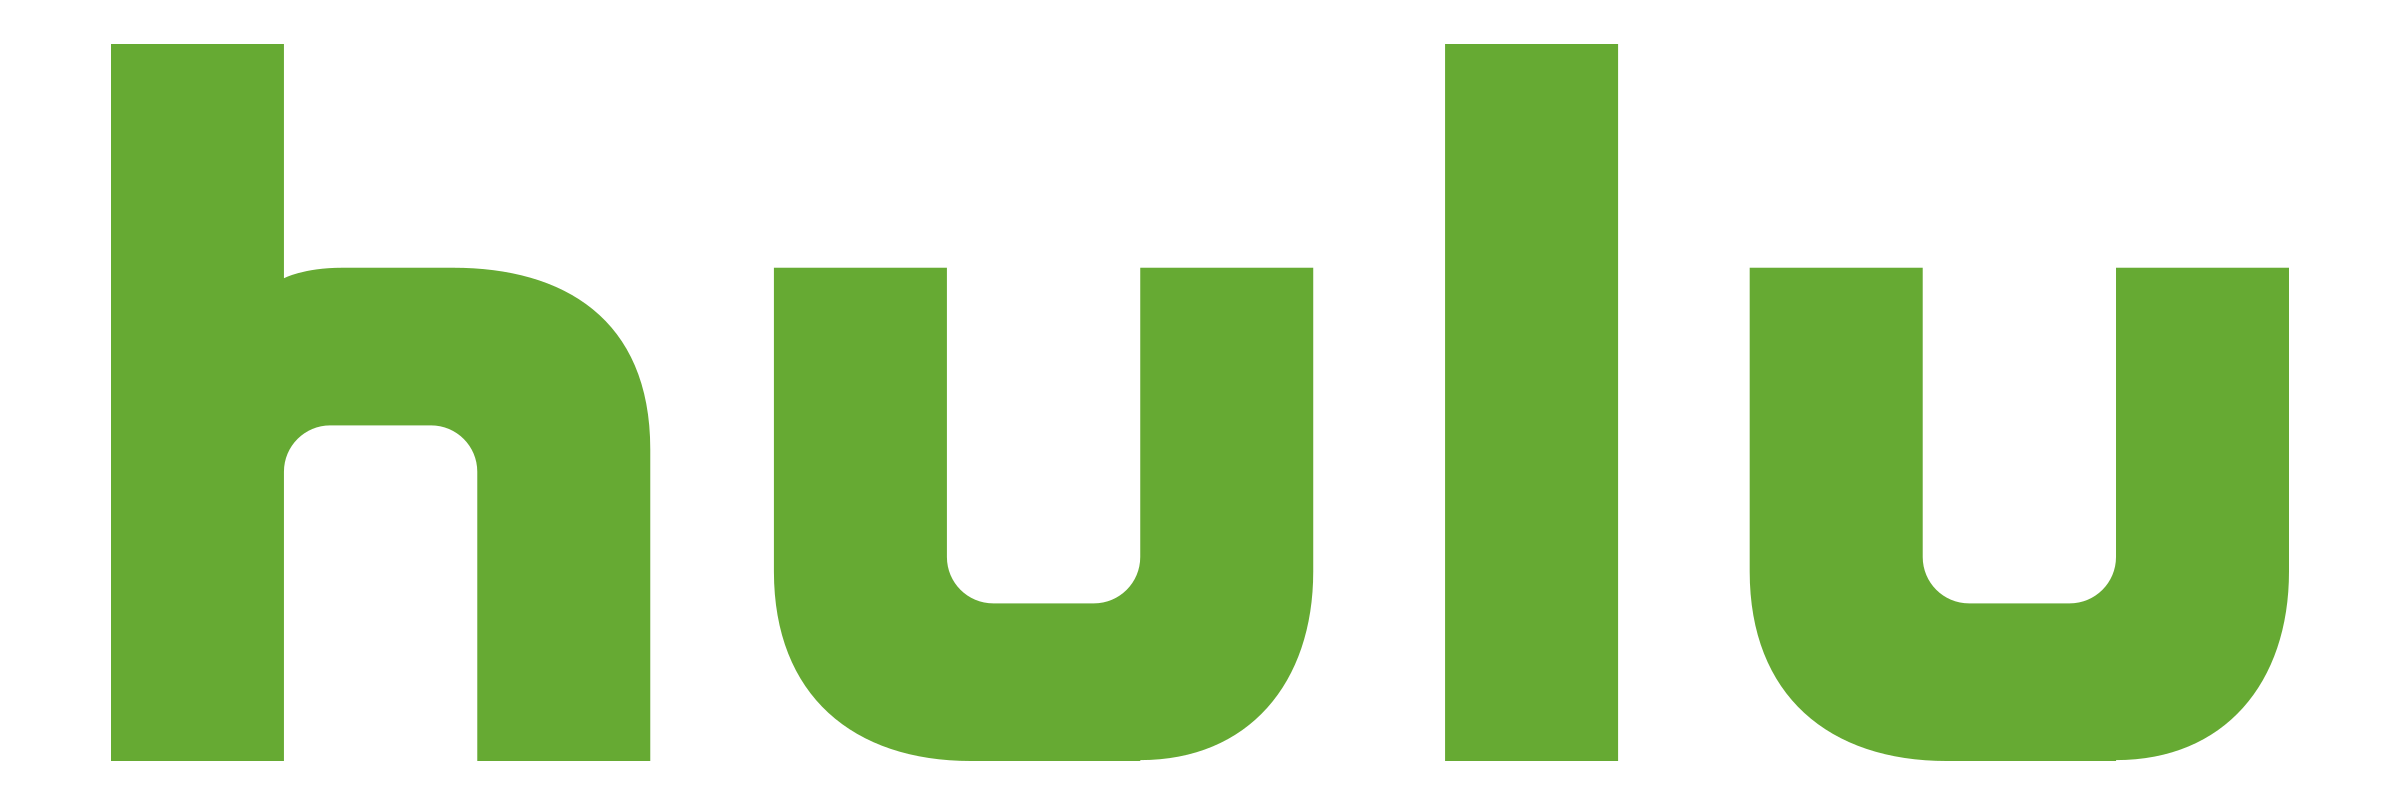 hulu-logo-transparent.png